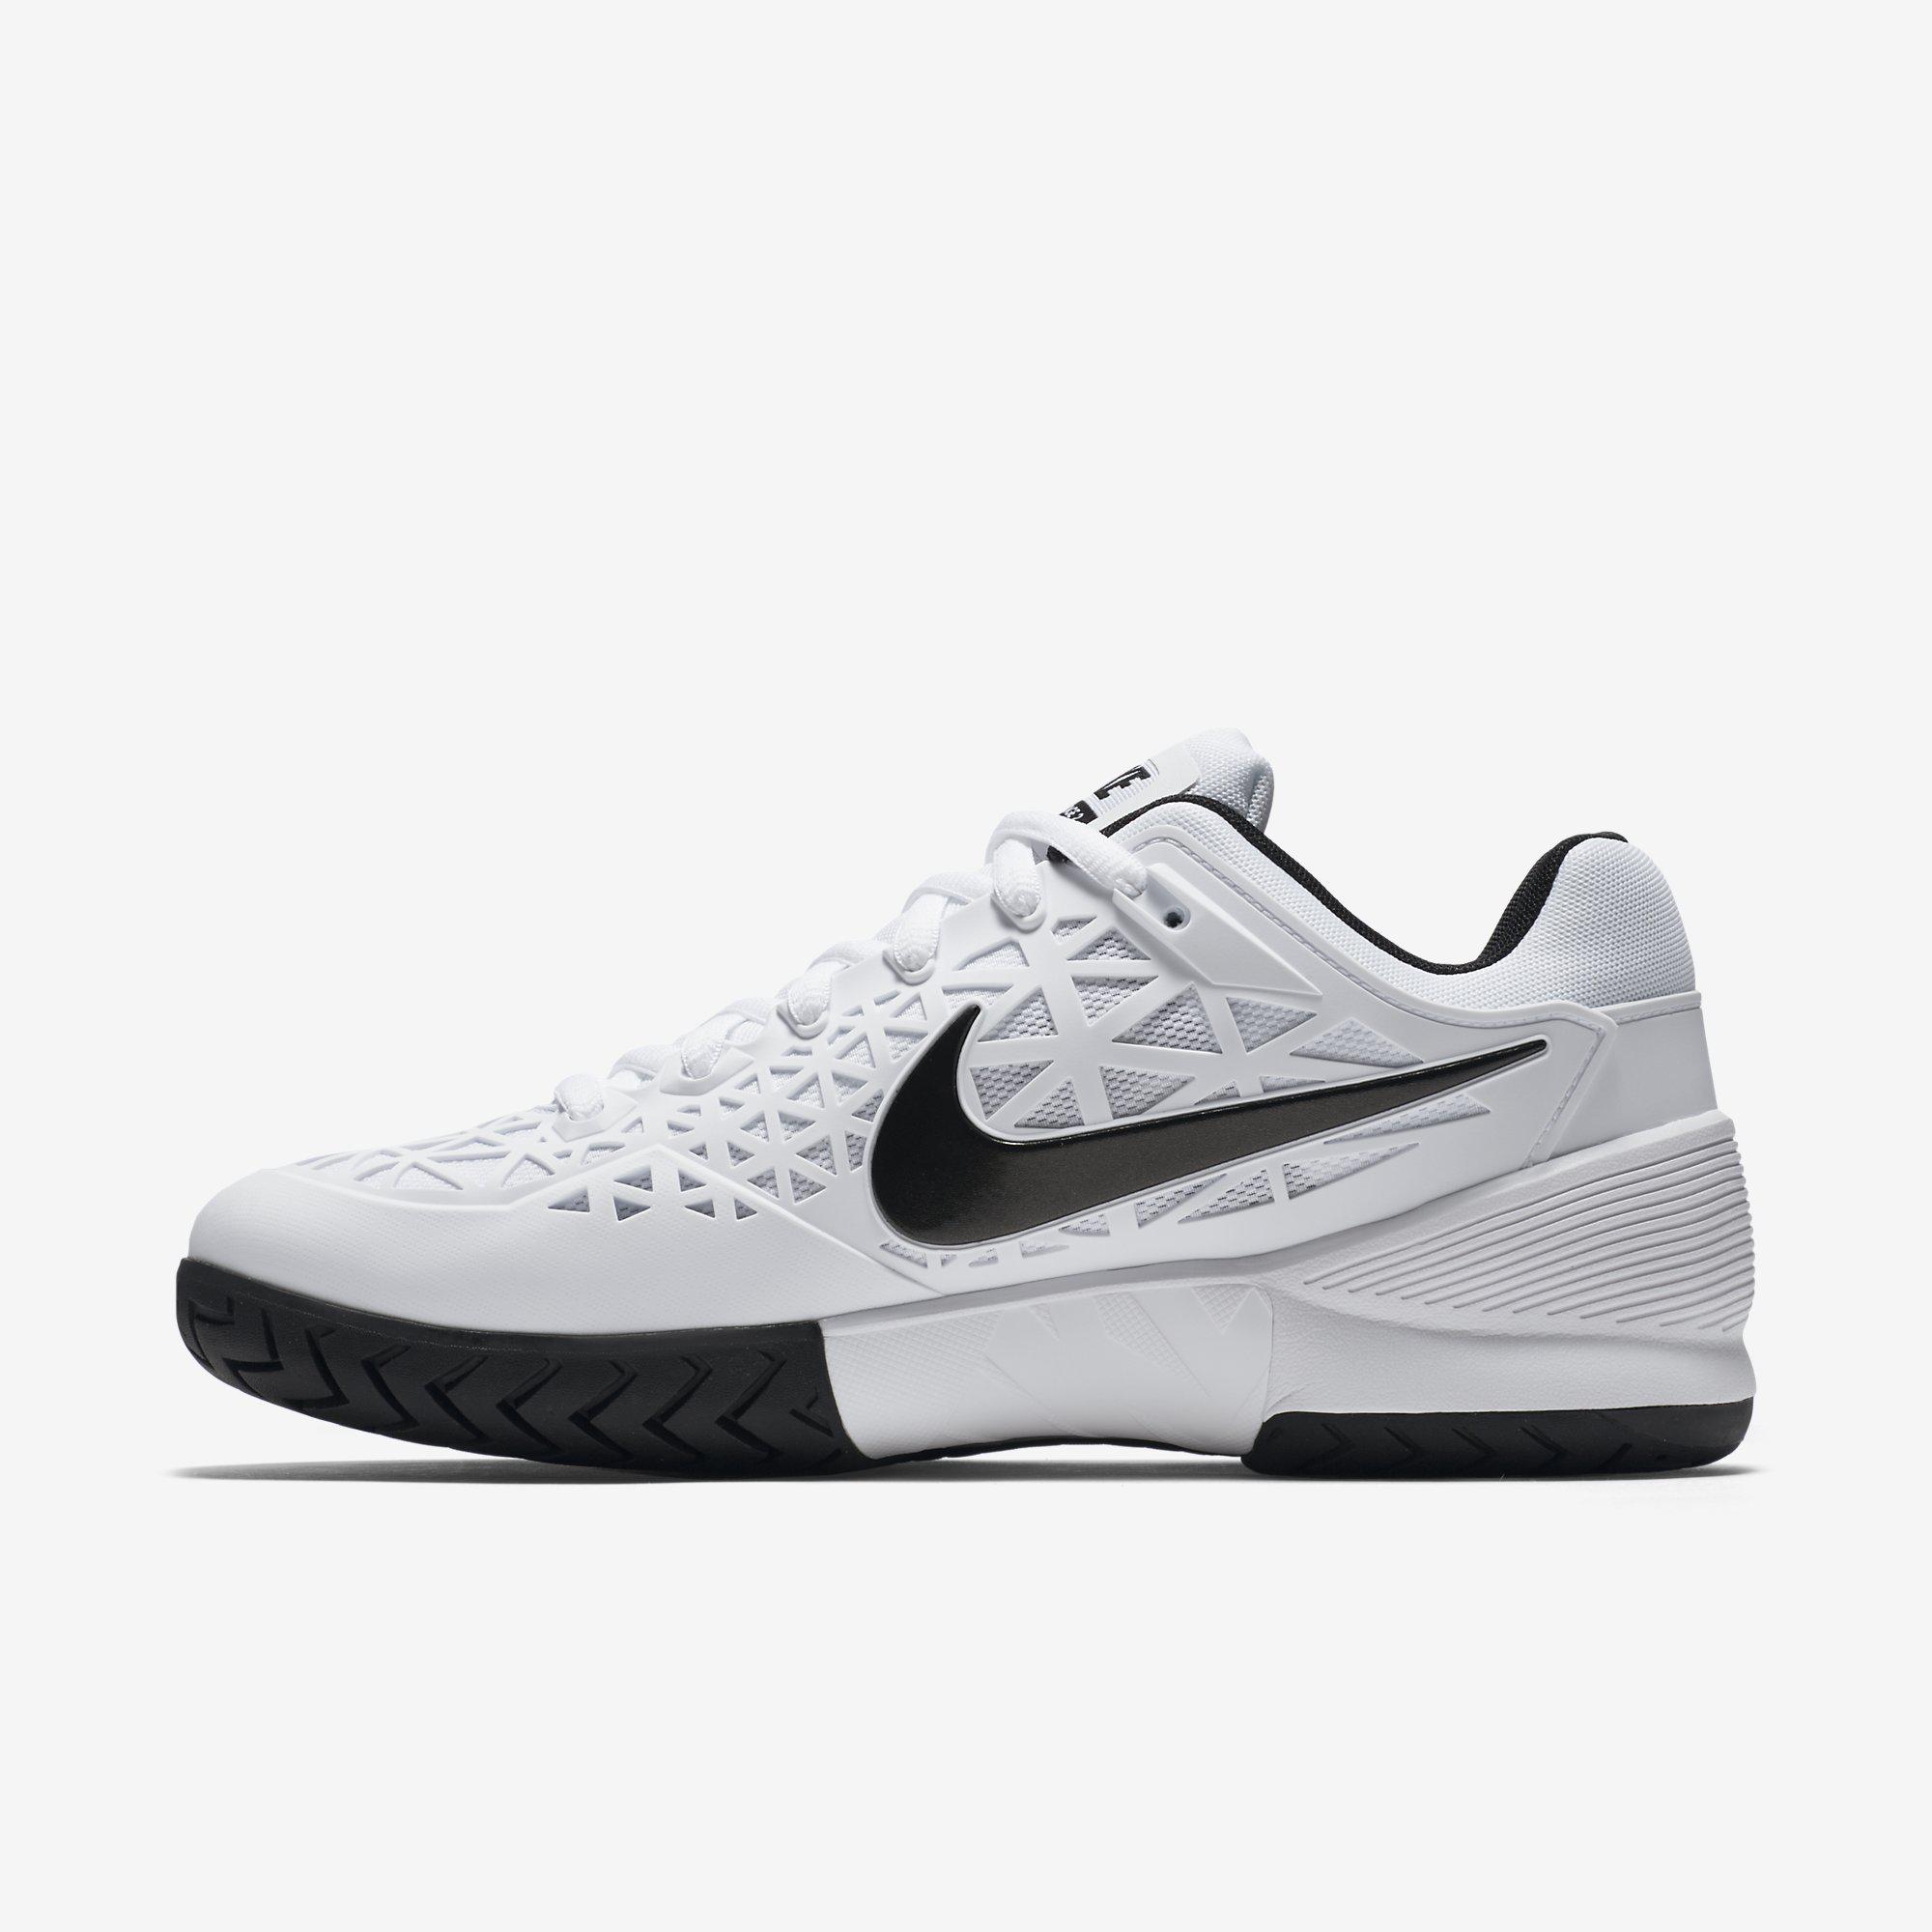 Nike Mens Zoom Cage 2 Tennis Shoes - White/Black - Tennisnuts.com